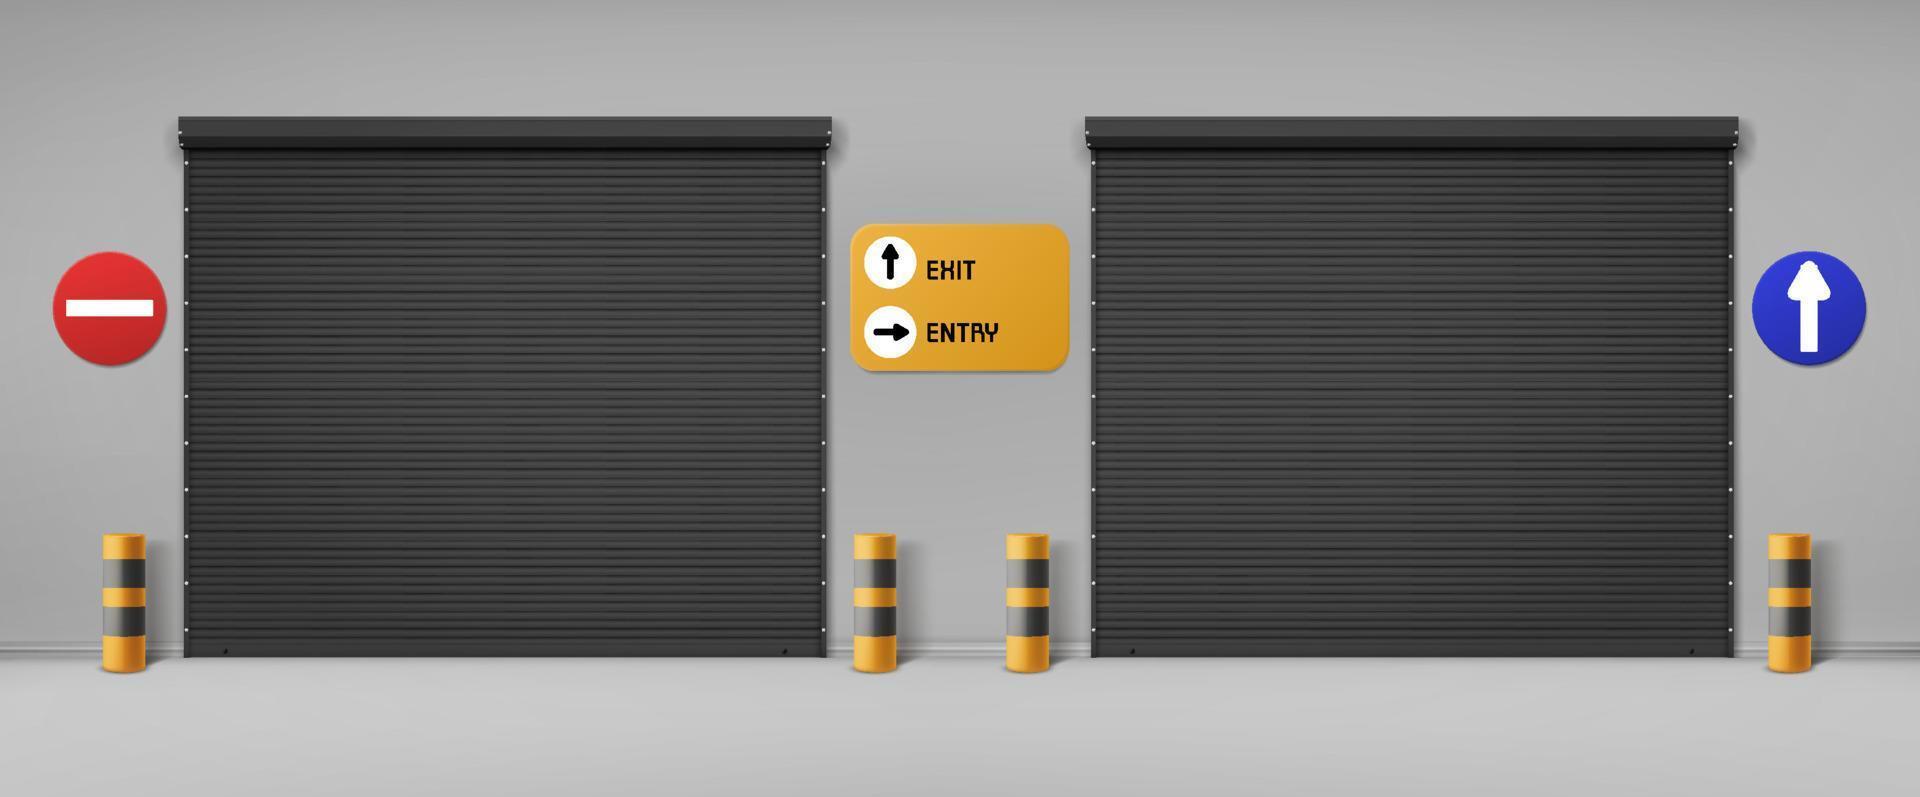 Garage doors, commercial hangar entrance doorways vector